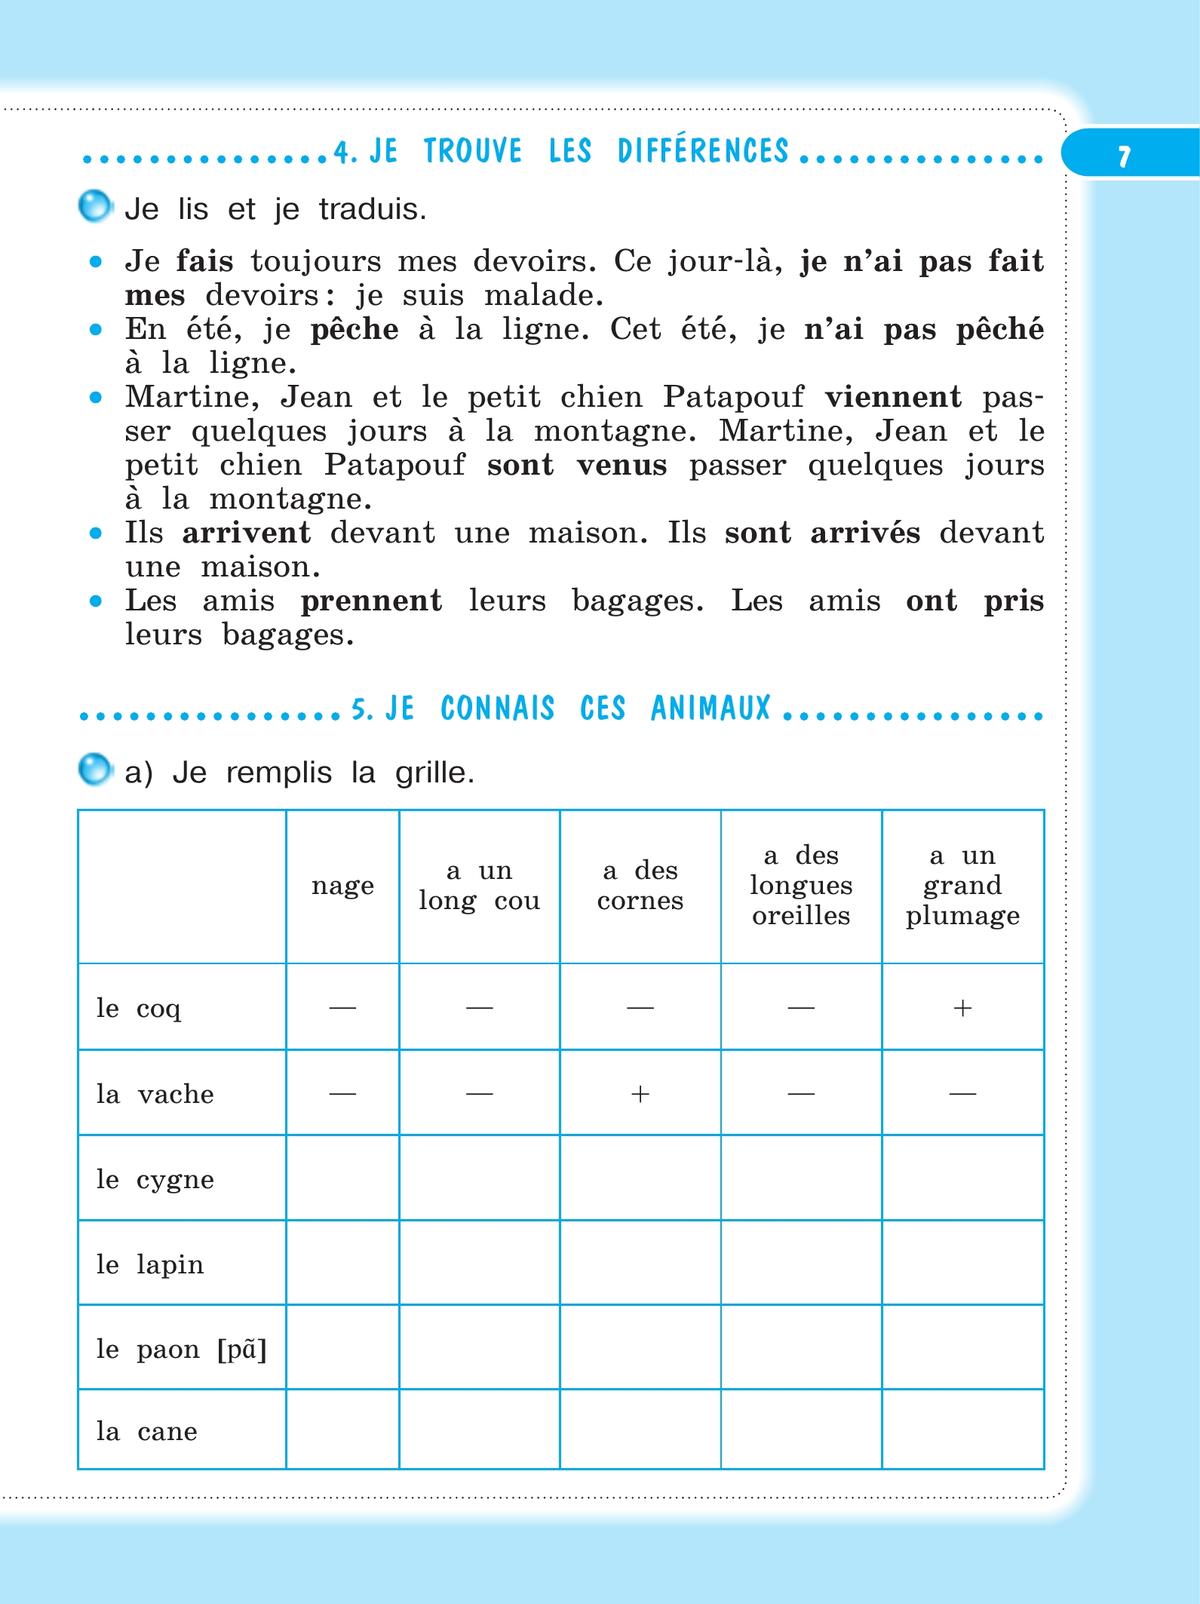 Французский язык. Рабочая тетрадь. 4 класс 10